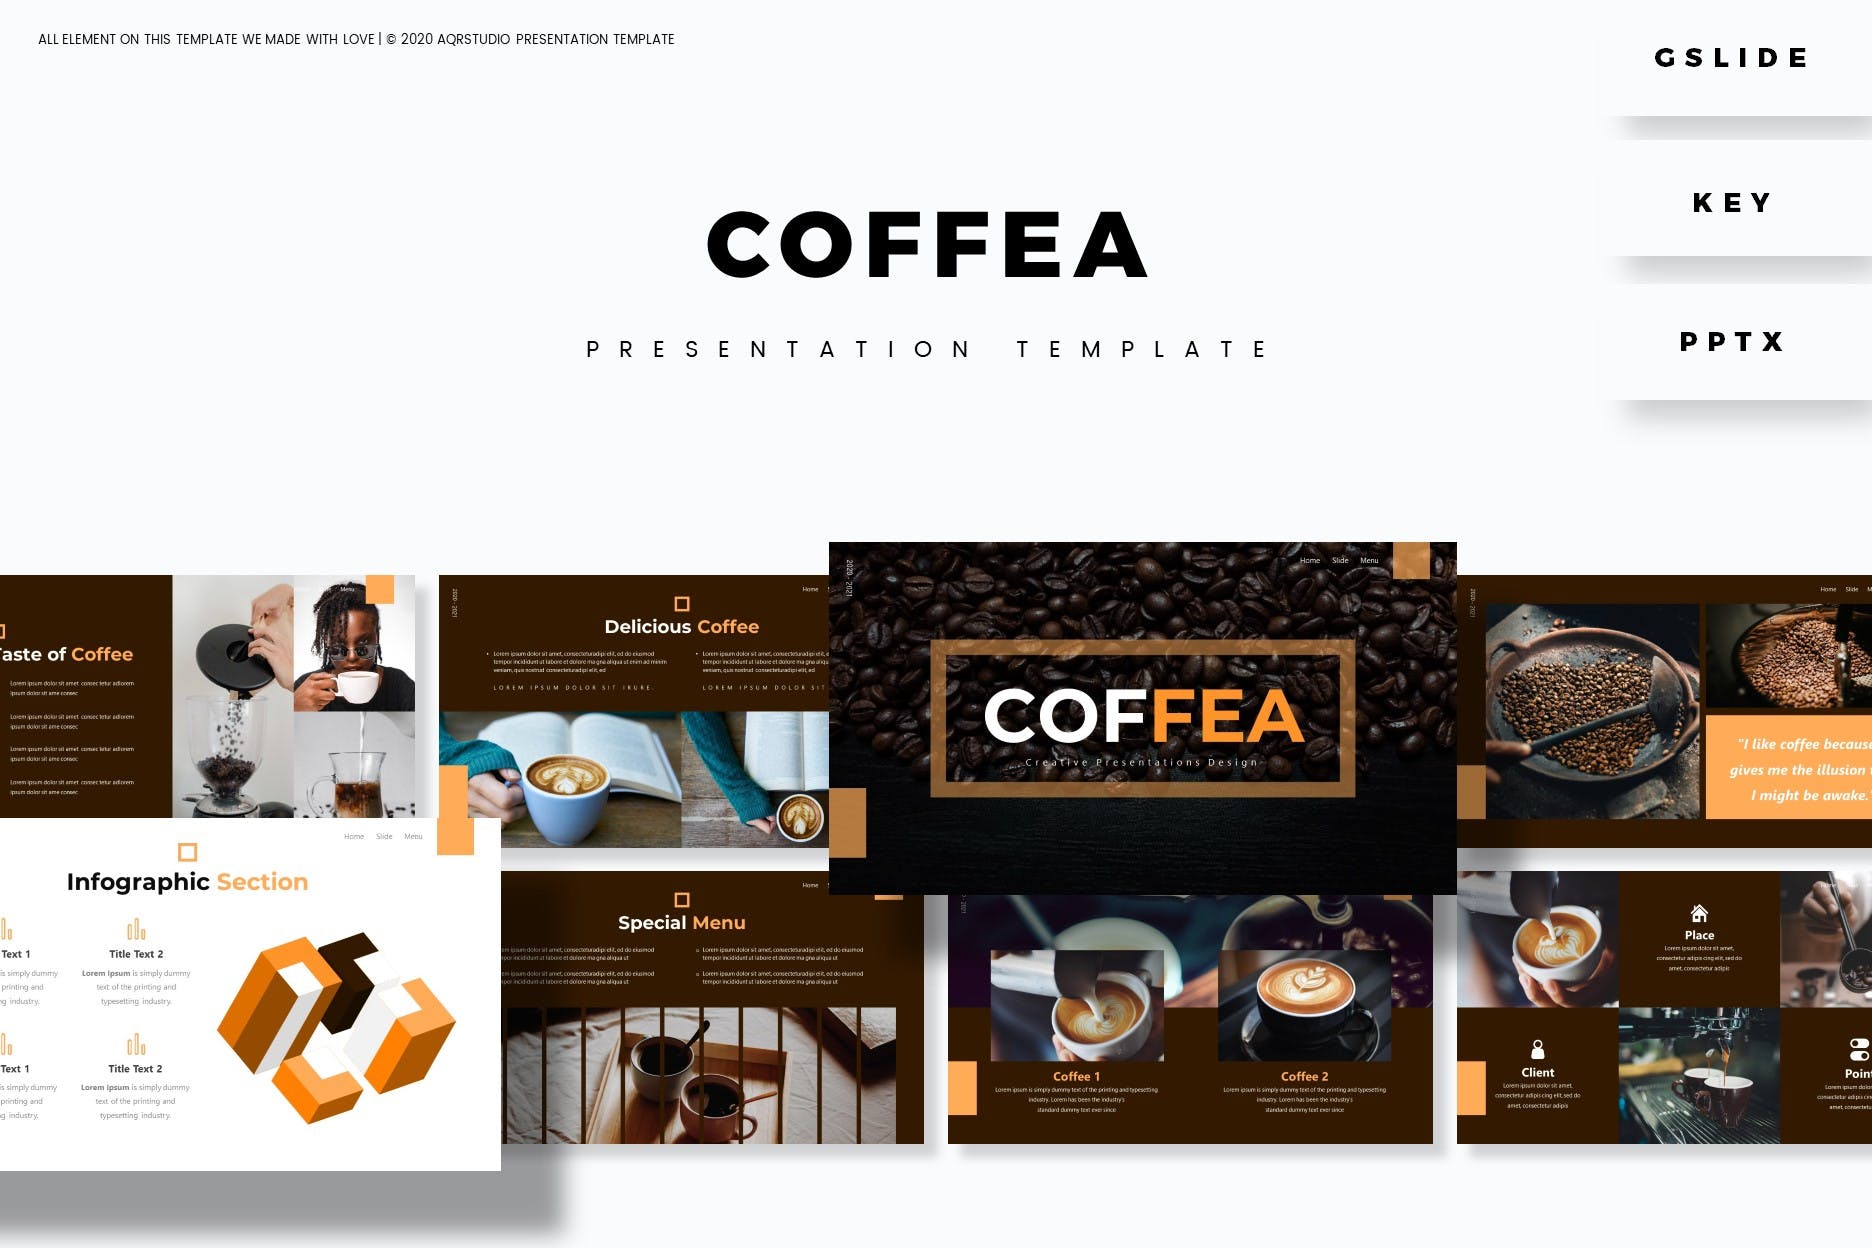 咖啡品牌推广介绍商业PPT模板免费下载